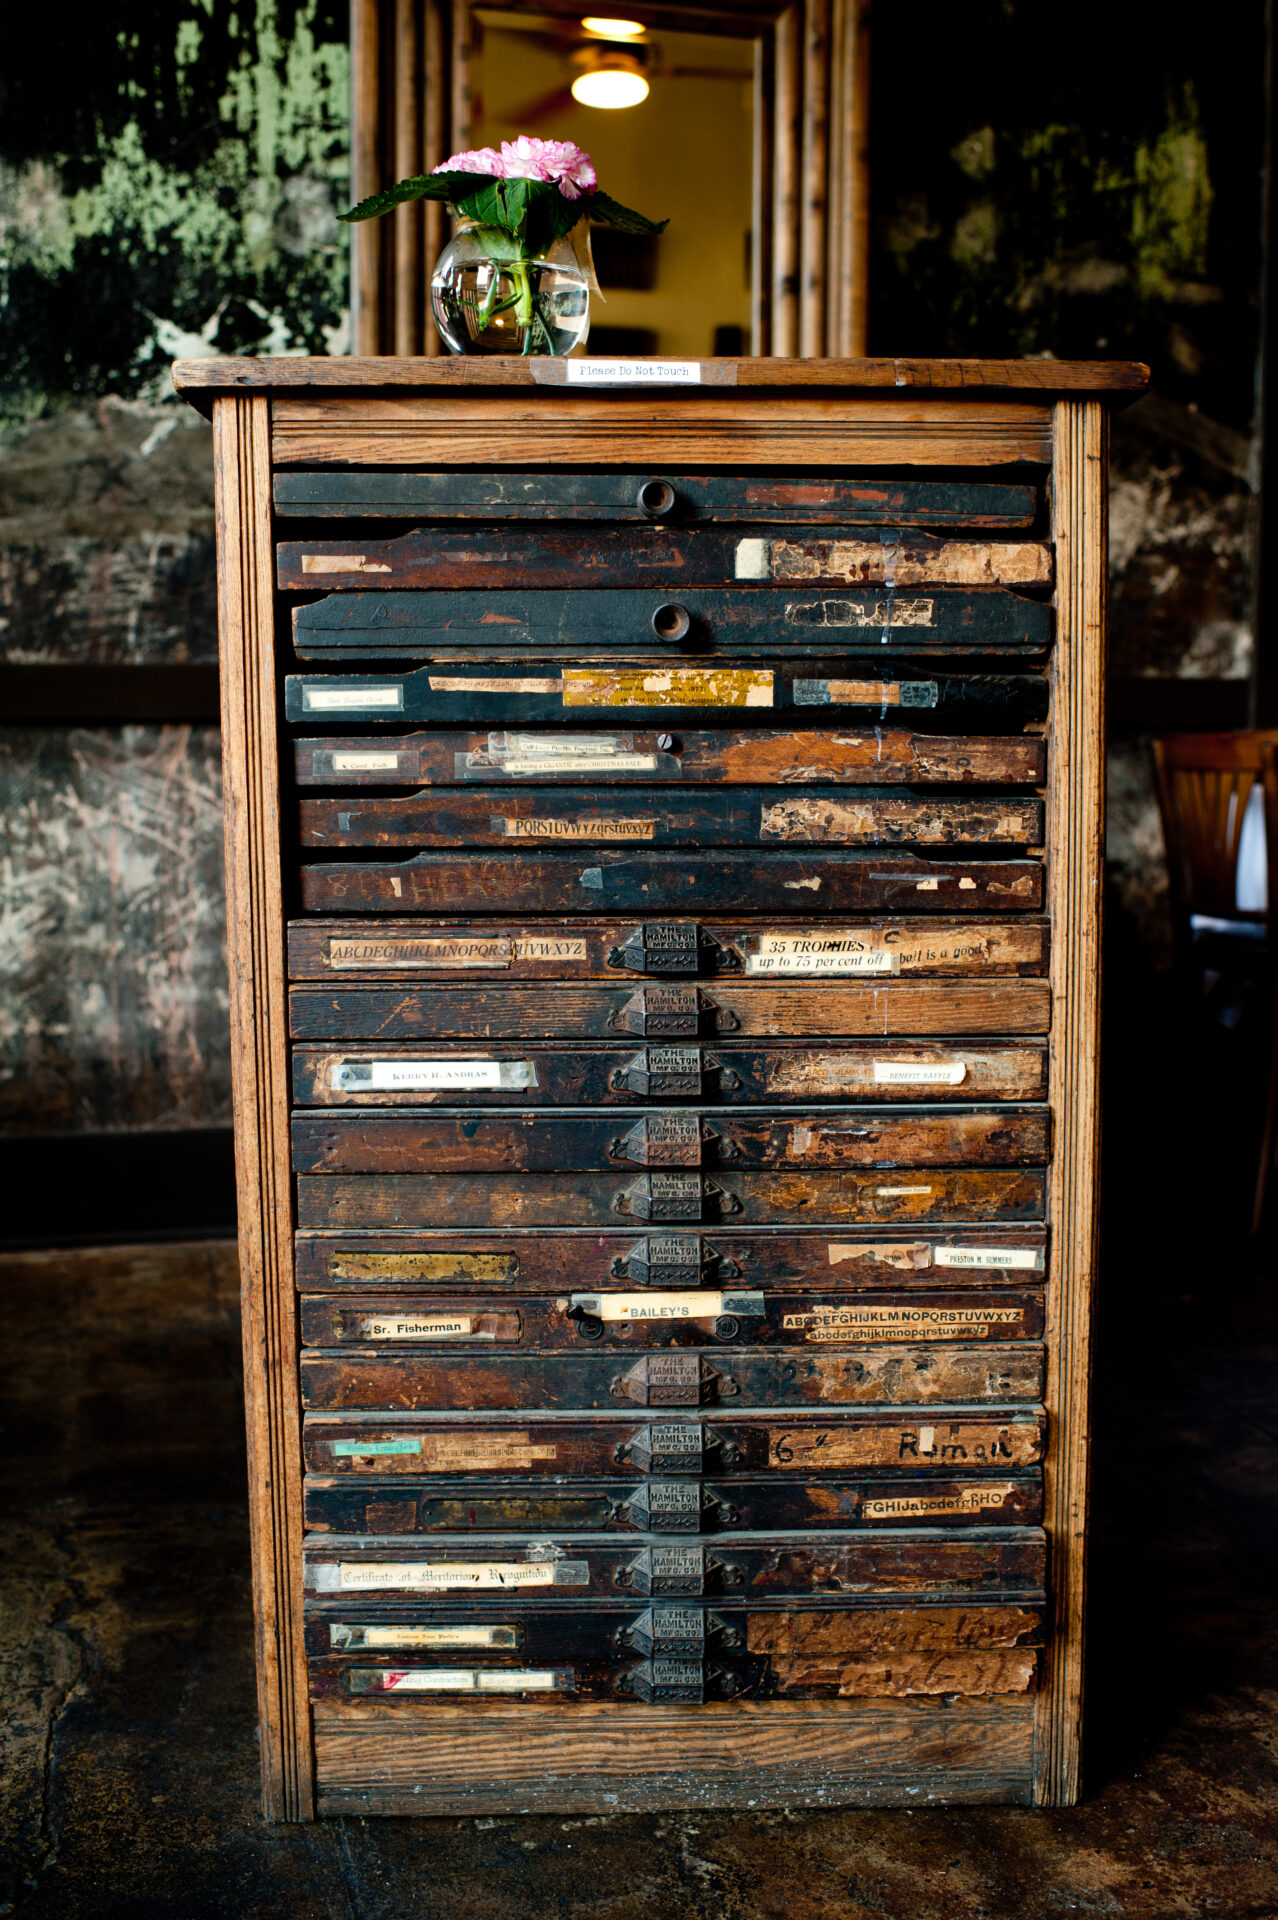 An antique, wooden rack